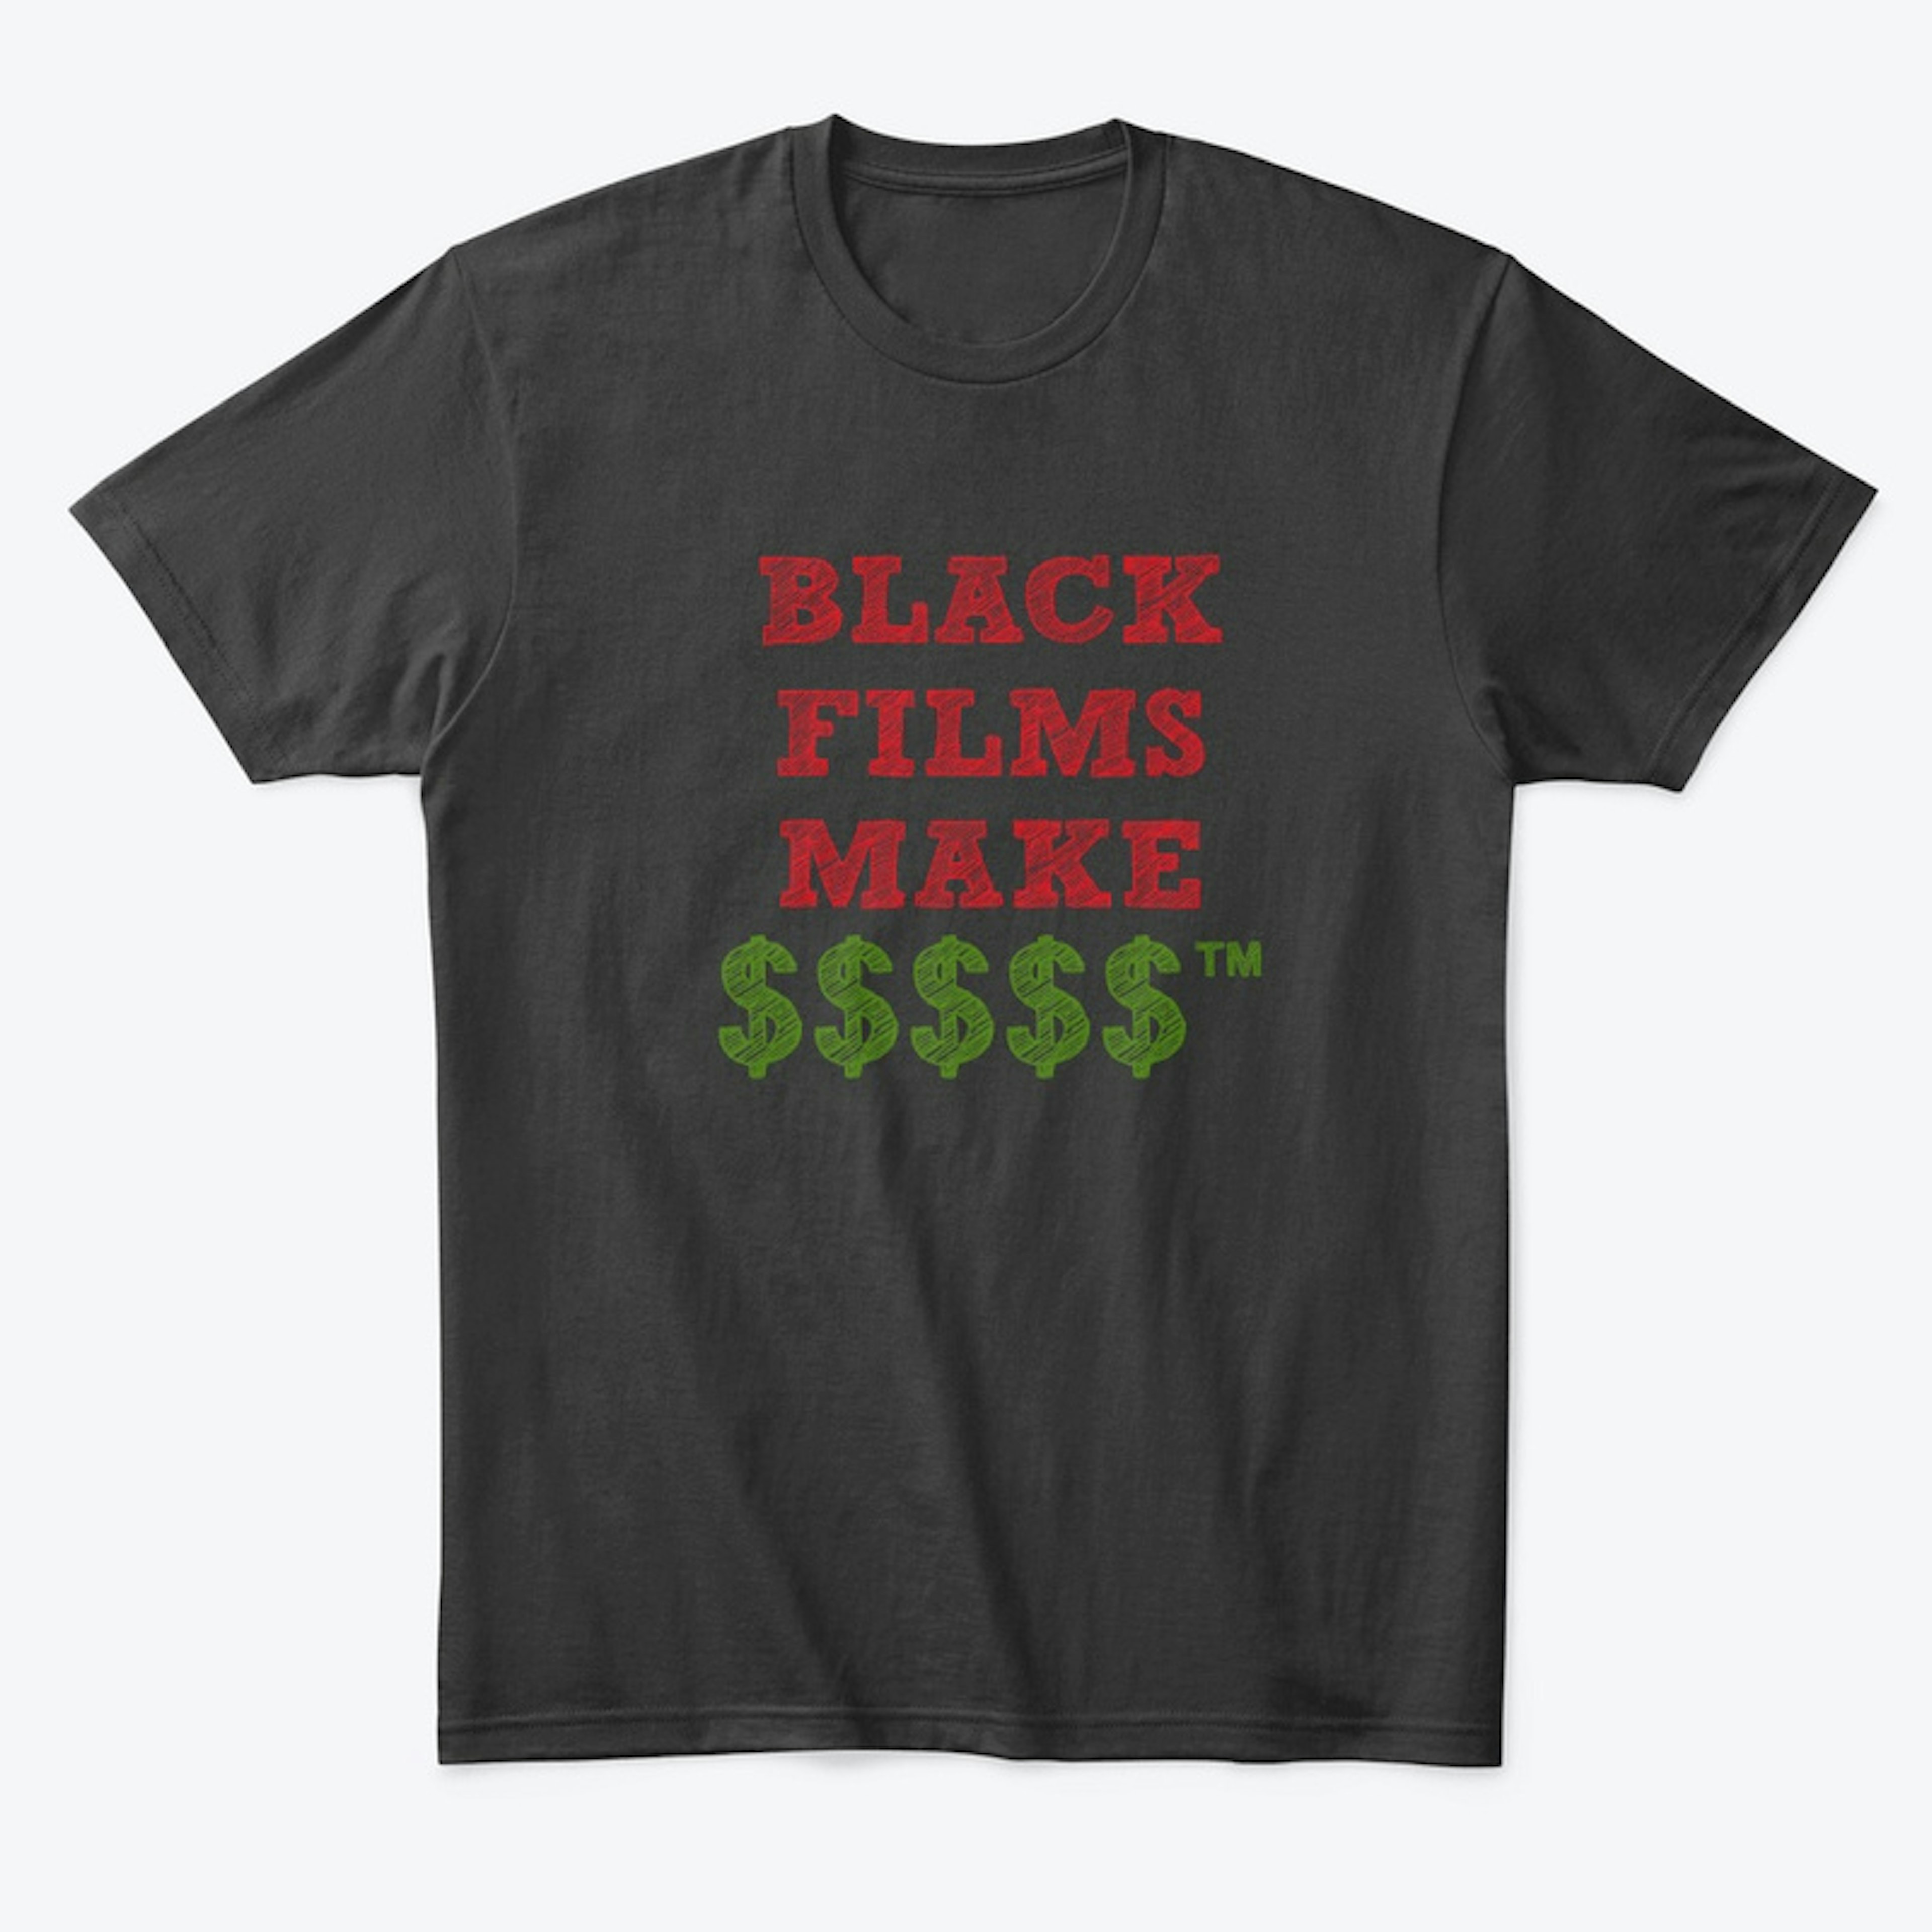 BLACK FILMS MAKE $$$$$